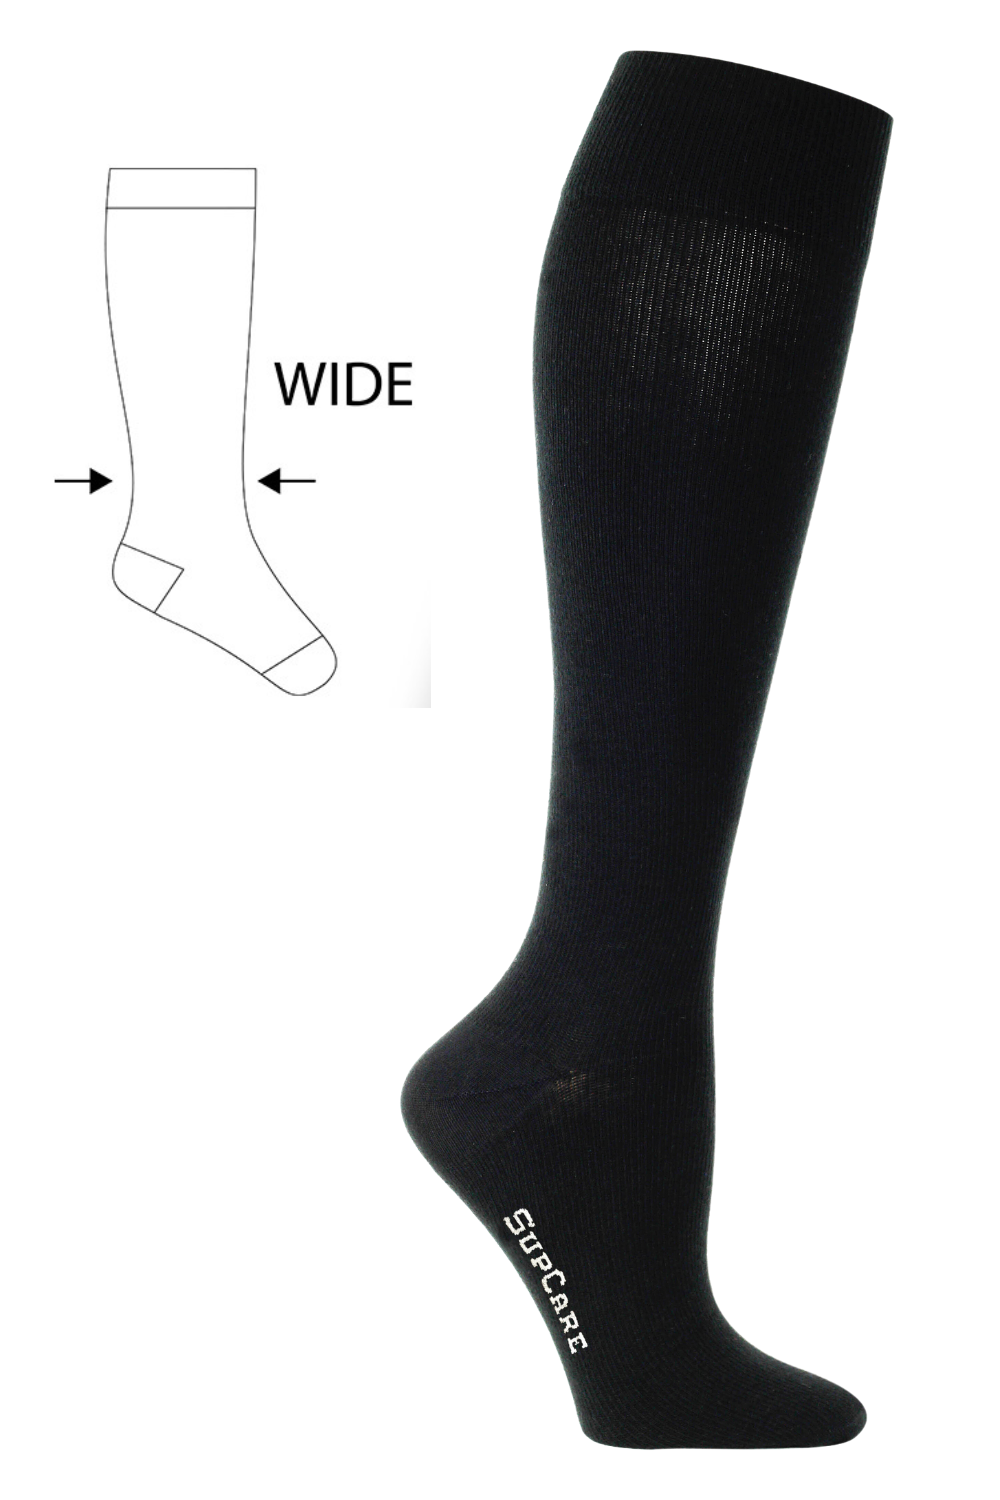 Compression Stockings Cotton, Black WIDE CALF